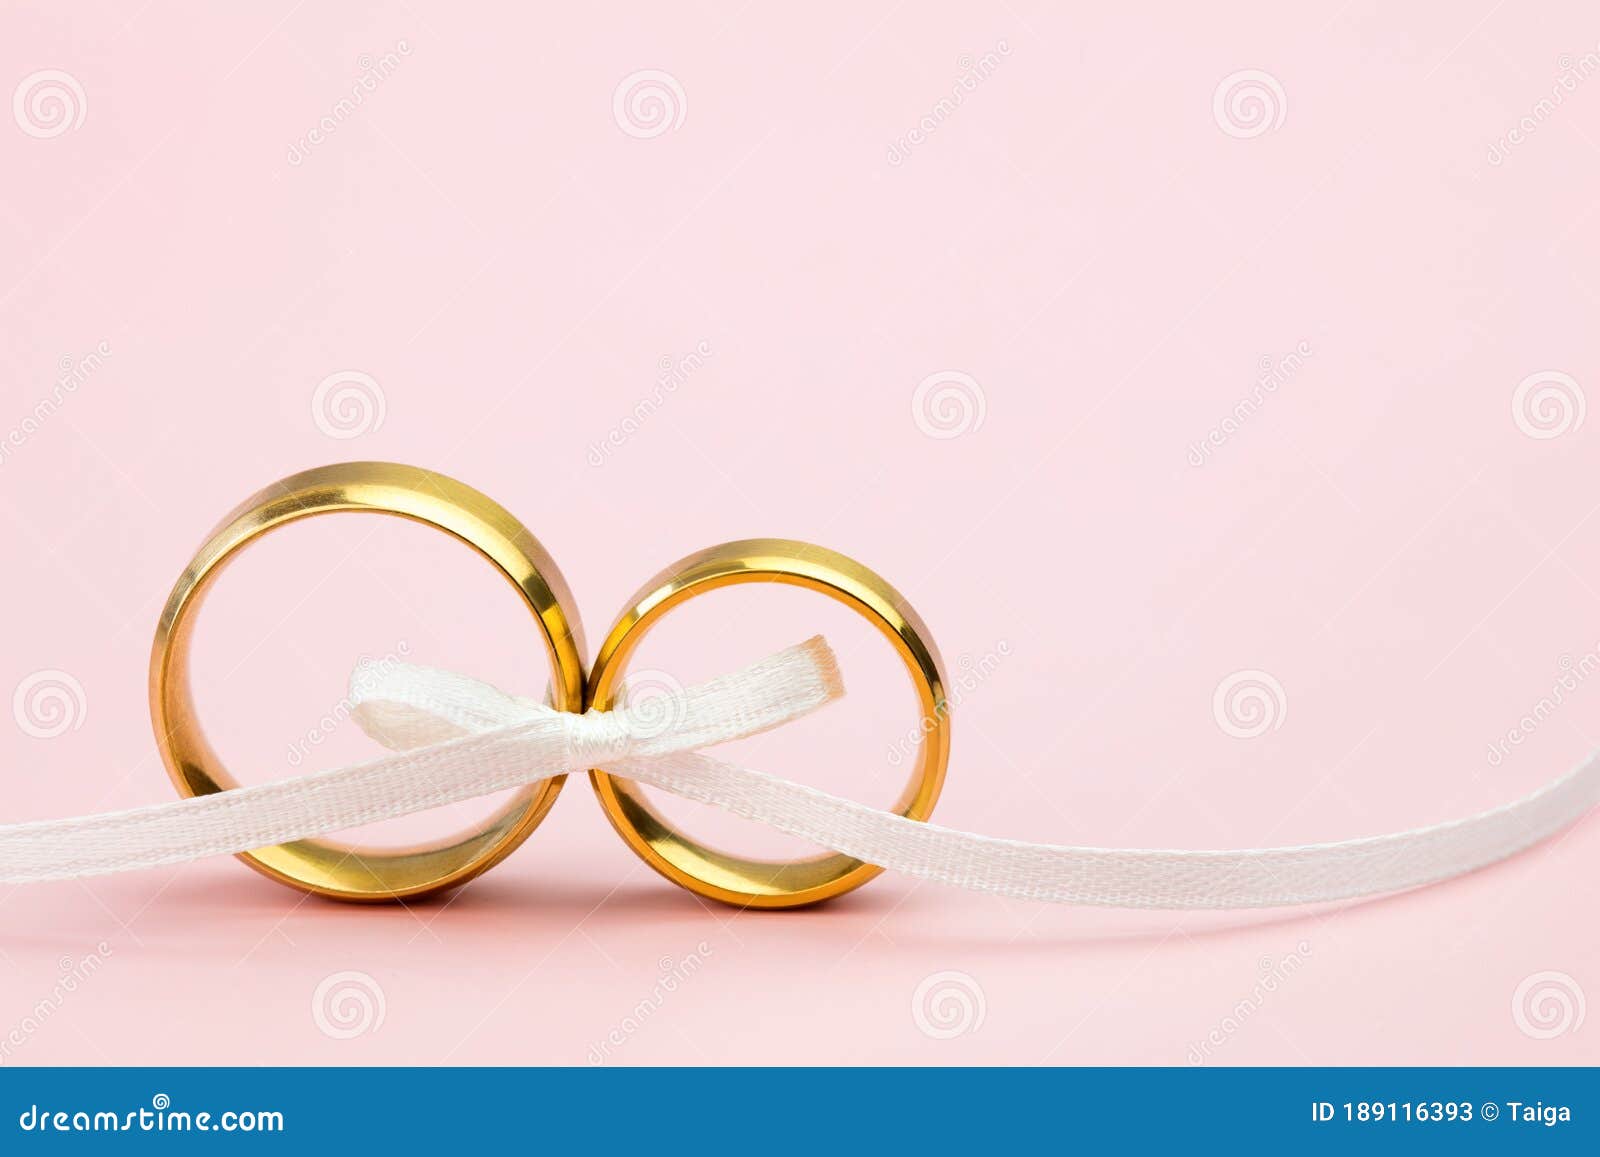 Đằng sau những cặp đôi vàng rực rỡ là một nền đẹp phù hợp cho những bữa tiệc cưới và đính hôn của bạn. Không chỉ xinh đẹp, mà nó còn mang ý nghĩa về tình yêu vĩnh cửu, chân thành và lời hứa mãi mãi.